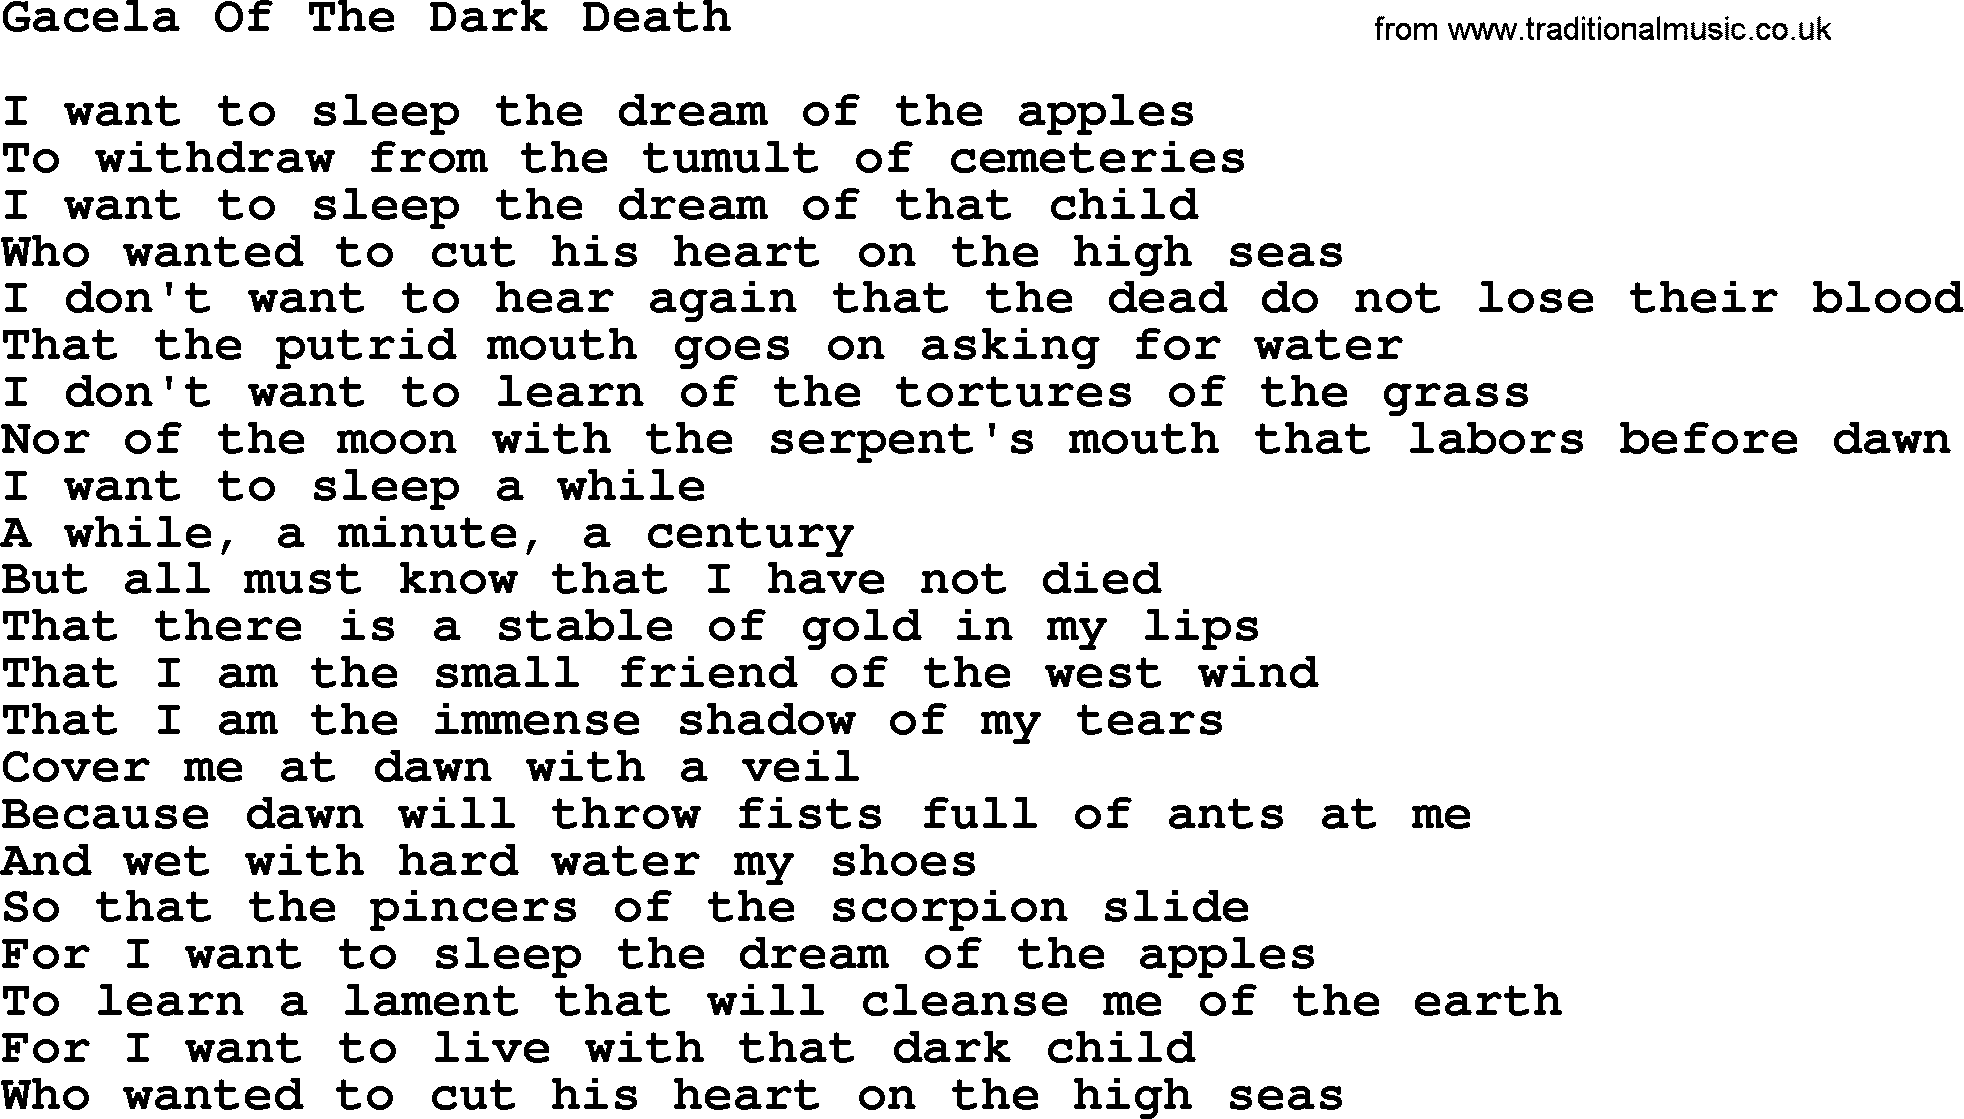 Joan Baez song Gacela Of The Dark Death, lyrics